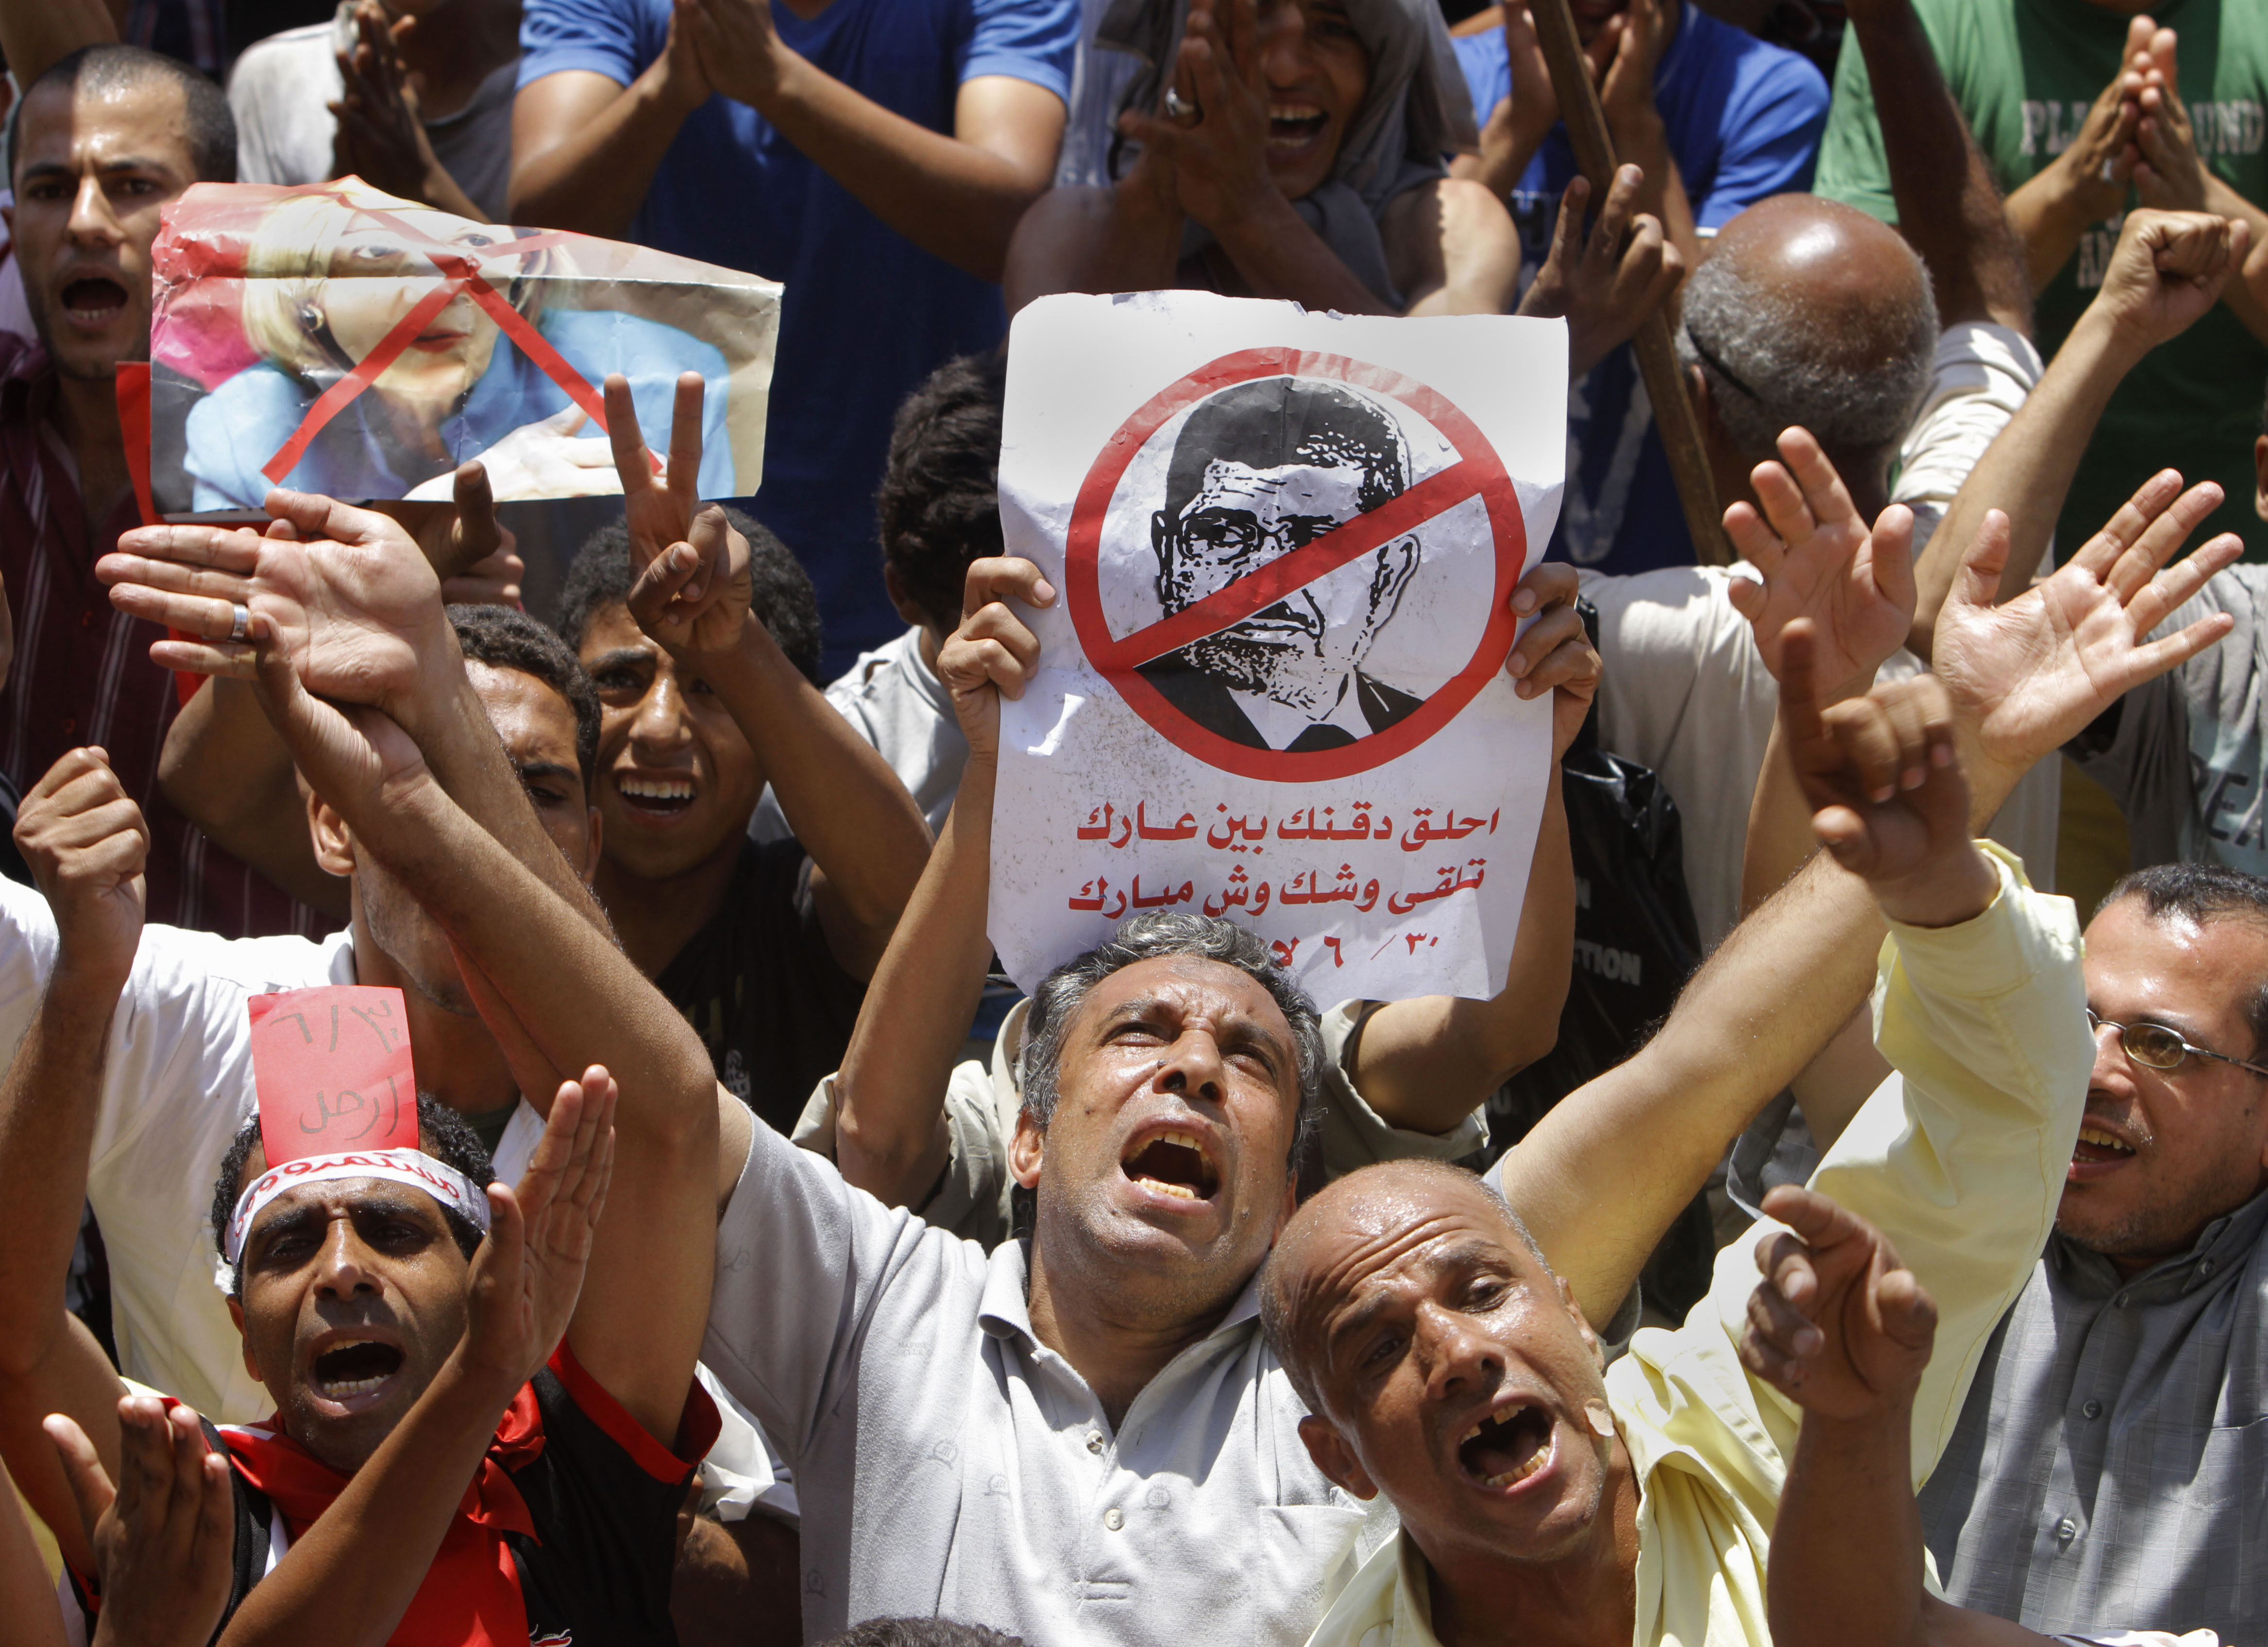 Μετά το πραξικόπημα με “ραντεβού” ο στρατός προκήρυξε εκλογές – Πυροτεχνήματα στην Ταχρίρ